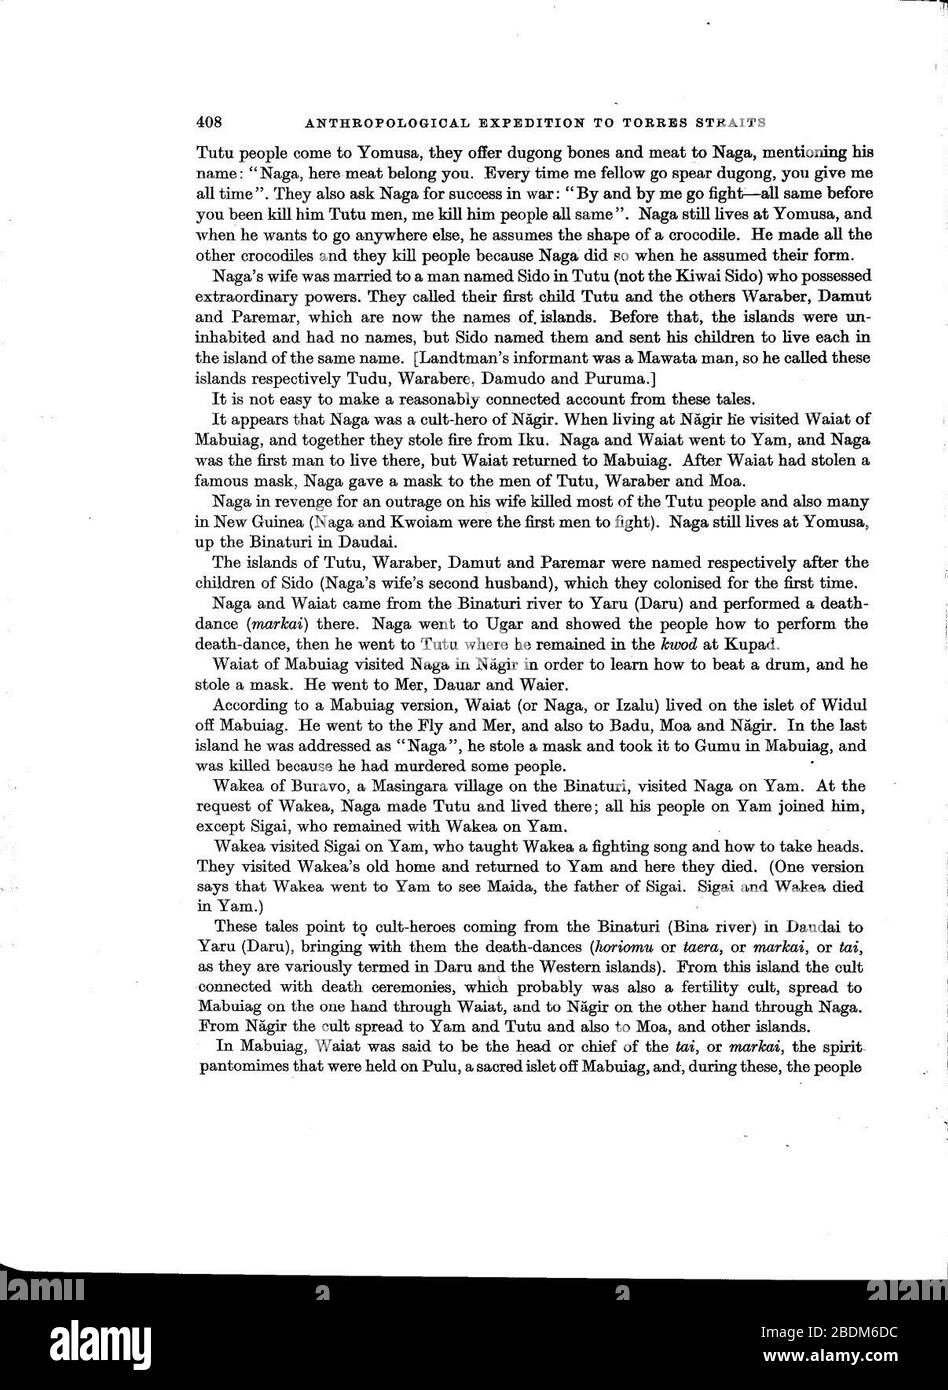 Haddon-Berichte der Cambridge Anthropological Expedition to Torres Straits-Vol 1 General Ethnography-ttu stc001 000031 Seite 428 Bild 0001. Stockfoto